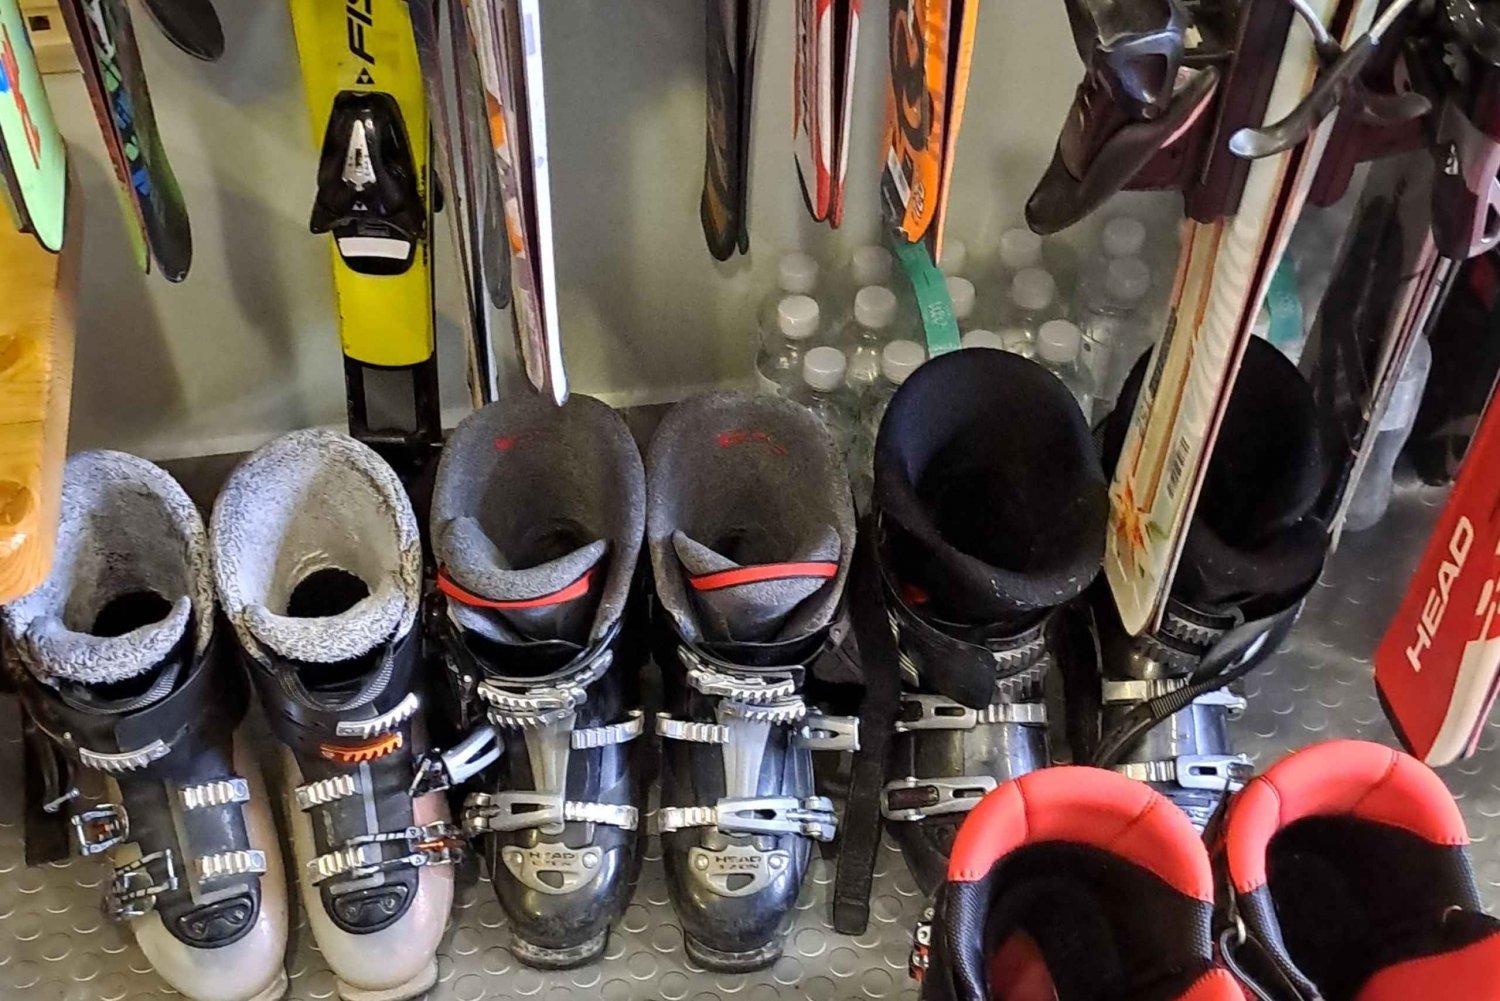 Borovets: Utleie av ski/snowboard-utstyr